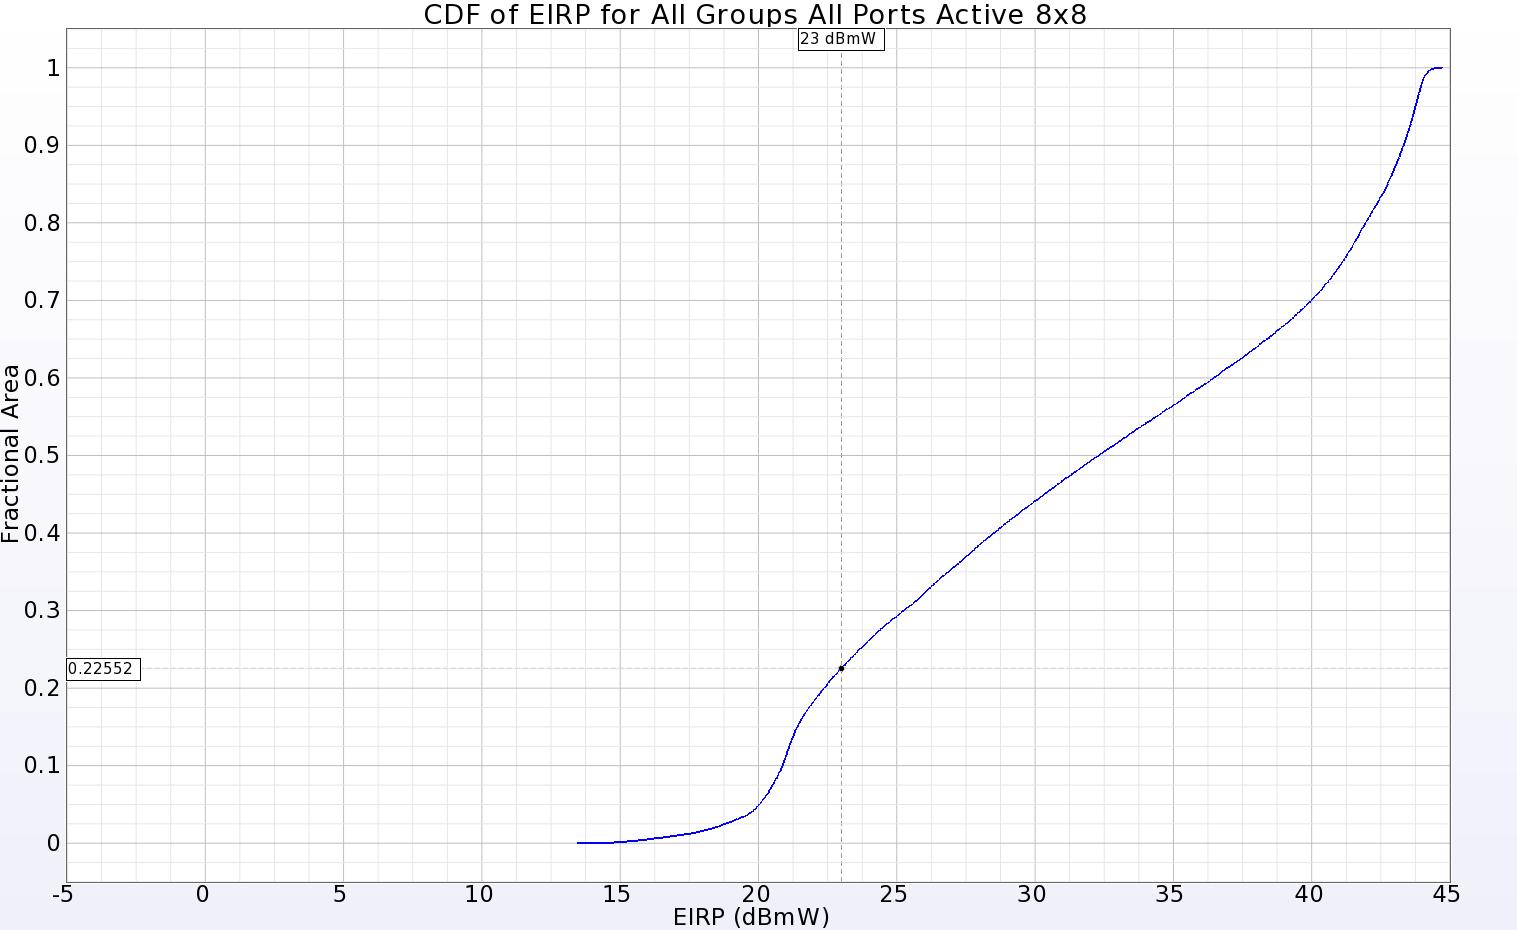 图 11：全 8x8 阵列的 EIRP CDF 图显示，在输入功率为 23 dBmW 时，远区球面 77.5% 的范围内均为正增益。